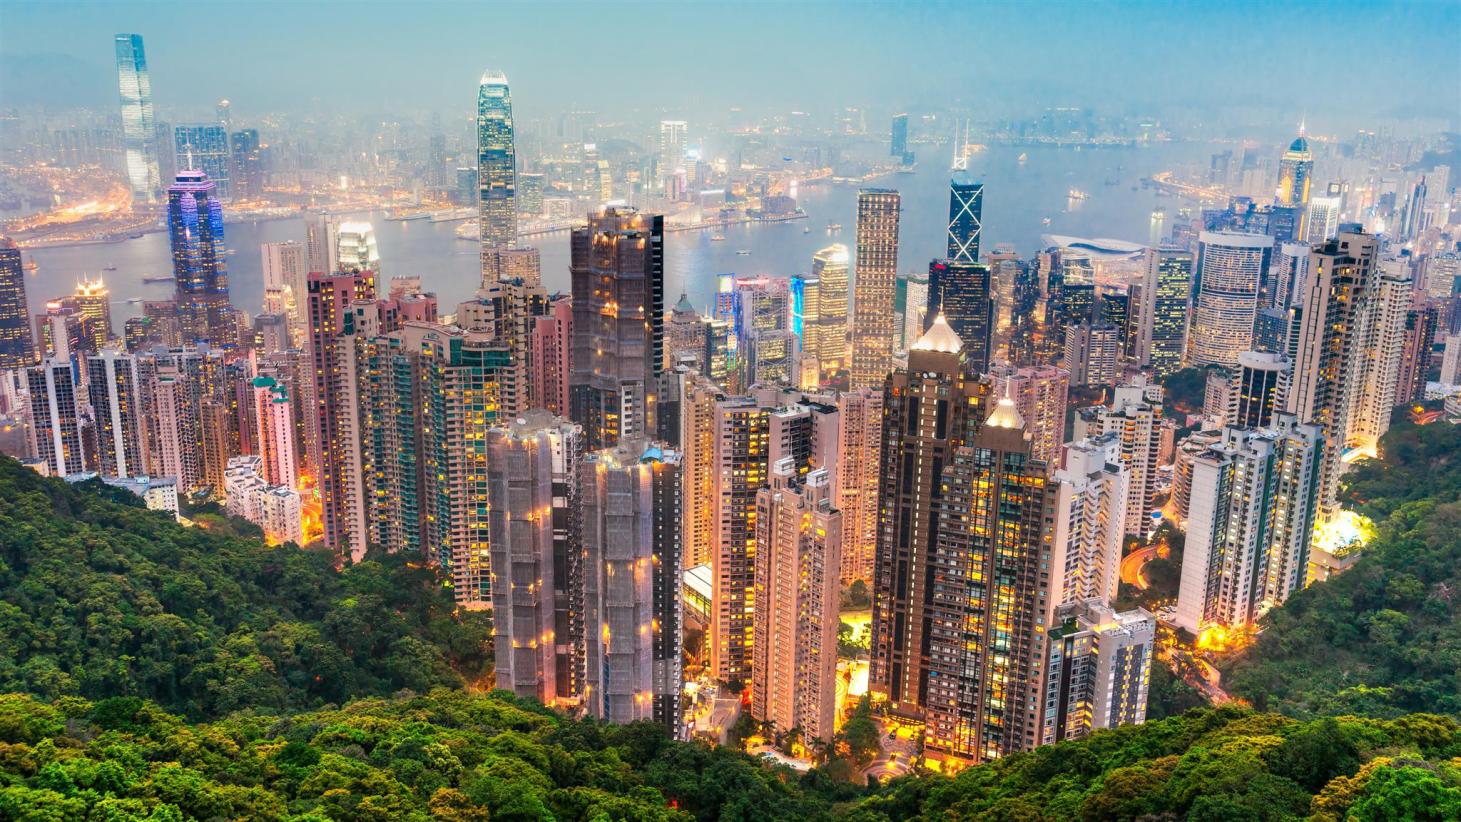 Bất động sản nhà ở Hồng Kông luôn thiếu hụt nguồn cung nghiêm trọng